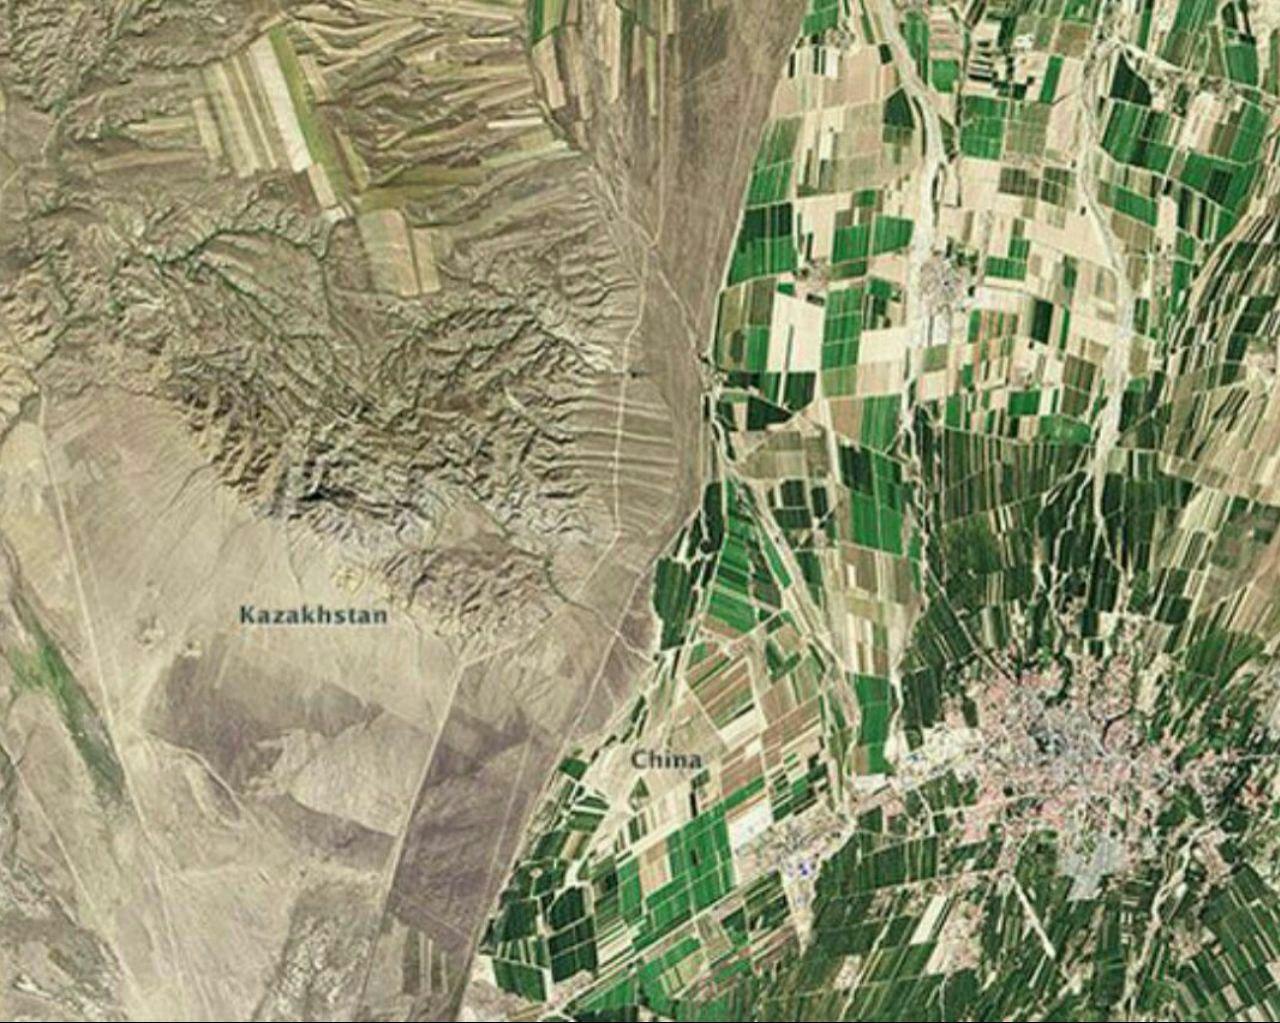 عکس / مرز بین قراقستان و چین از فضا